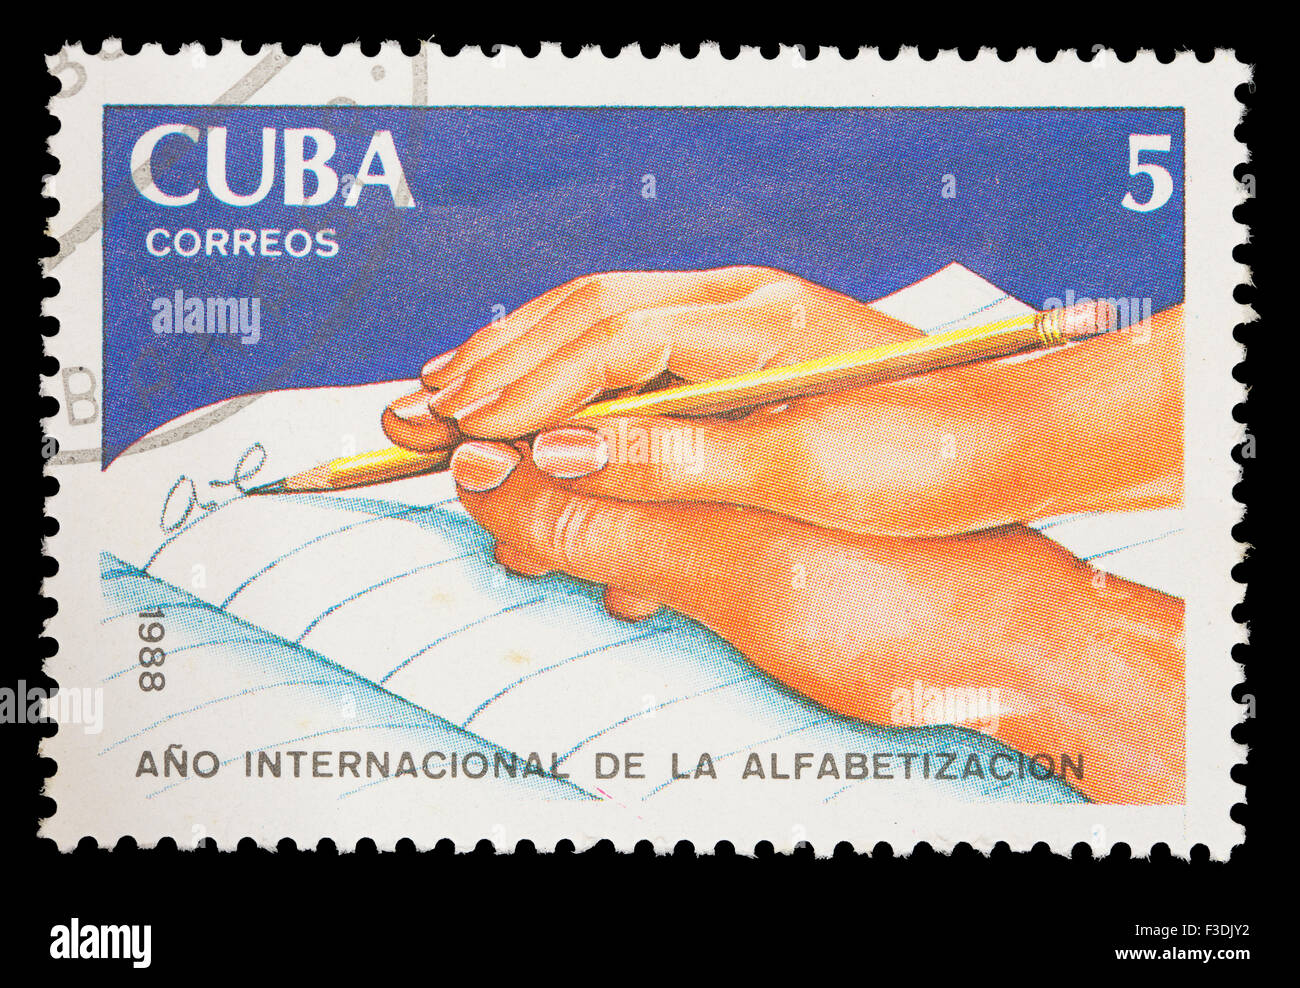 CUBA - circa 1988 : un timbre-poste imprimé en Cuba montre une part d'aider quelqu'un d'autre à écrire, l'Année internationale de l'alphabétisation, cria Banque D'Images